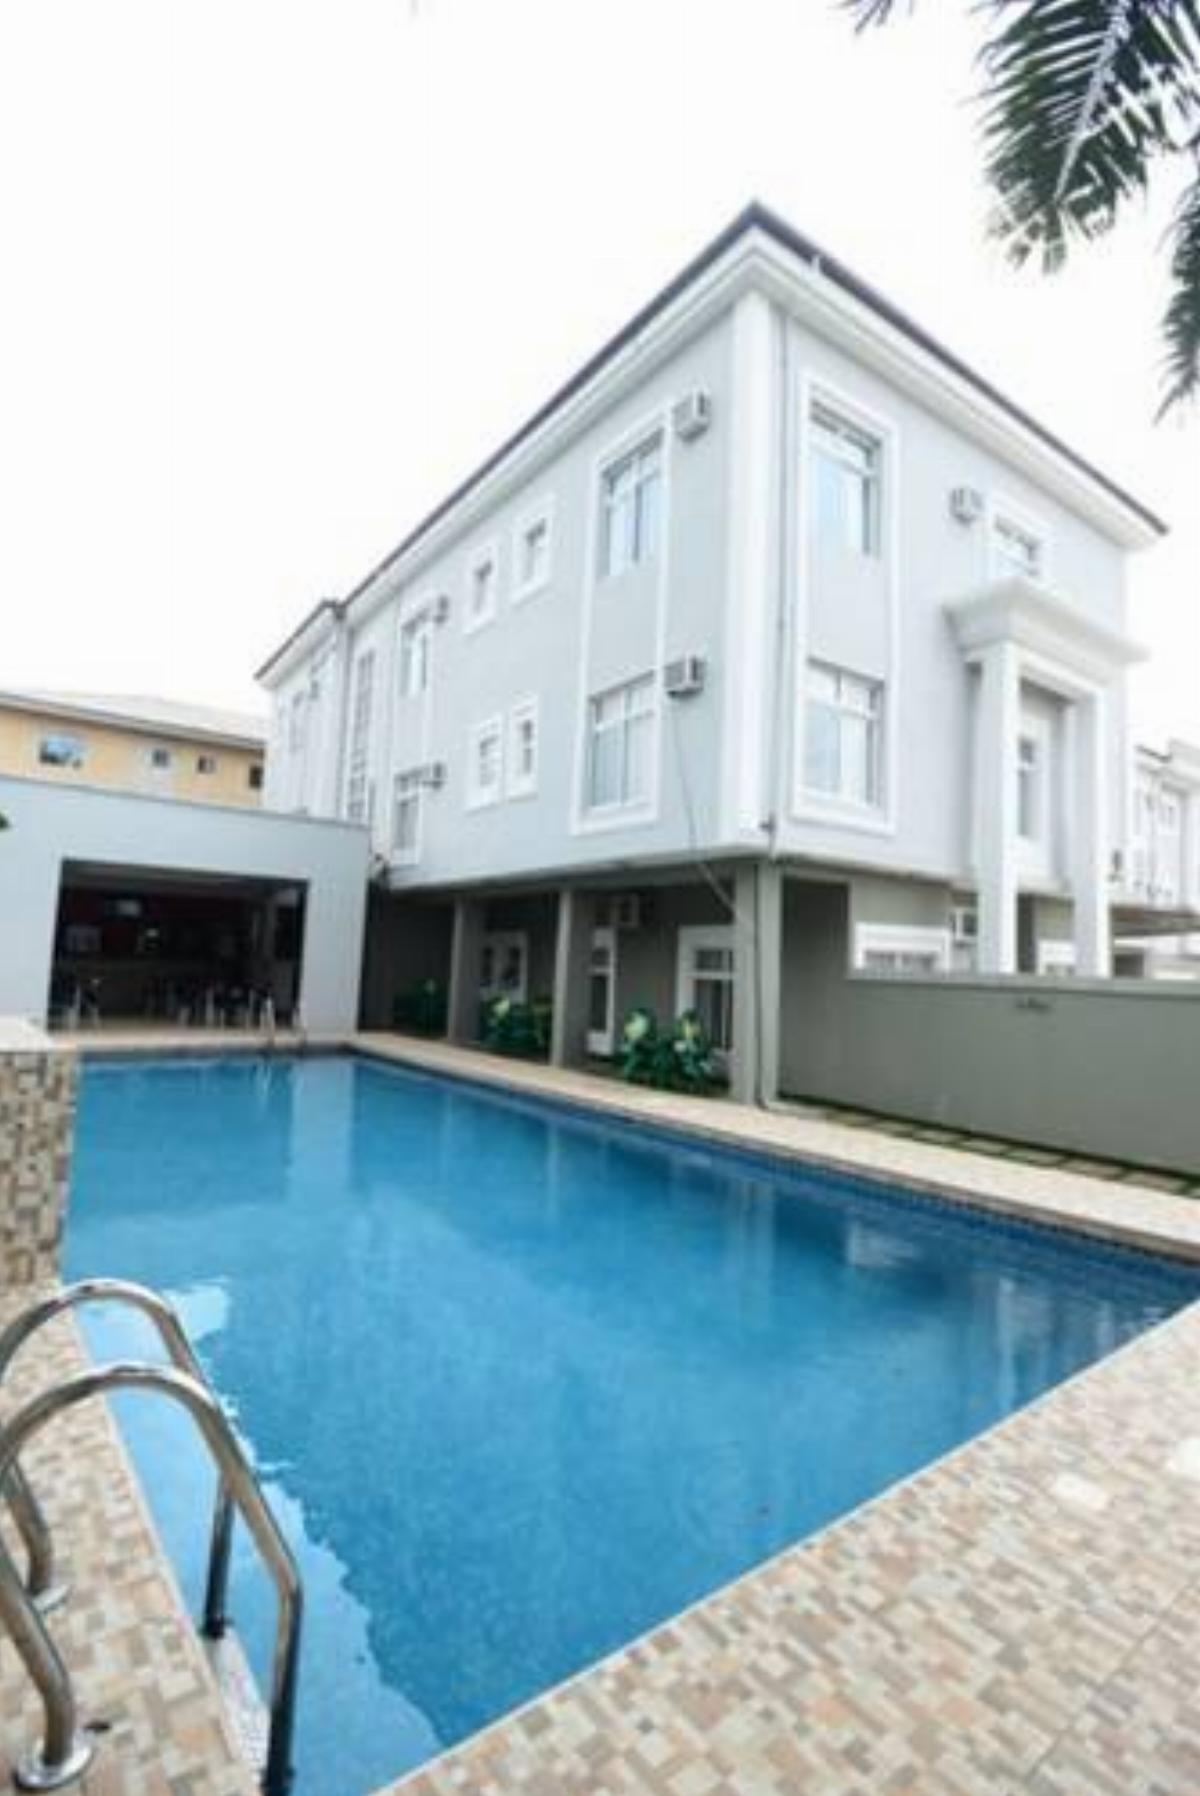 Prenox Hotel And Suites Hotel Benin City Nigeria